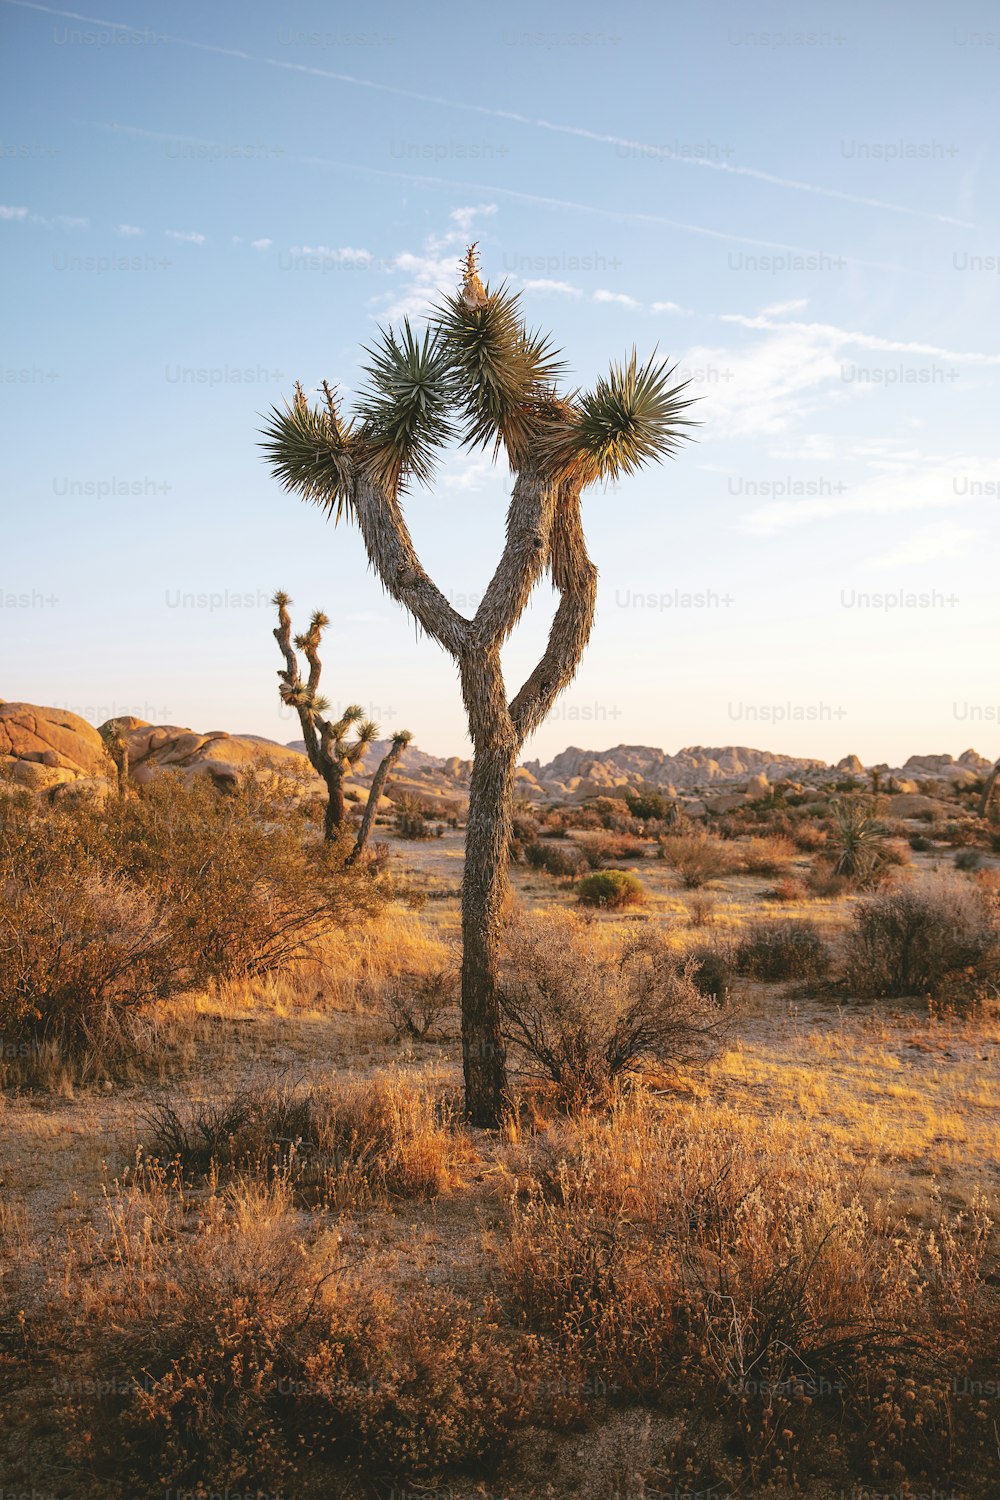 Un pequeño árbol en medio de un desierto